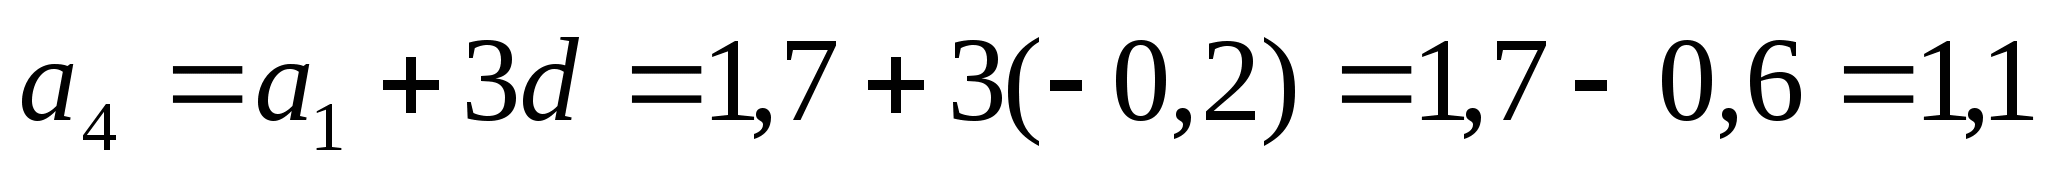 Сабақтың тақырыбы: Арифметикалық прогрессия, оның n-ші мүшесінің формуласы.